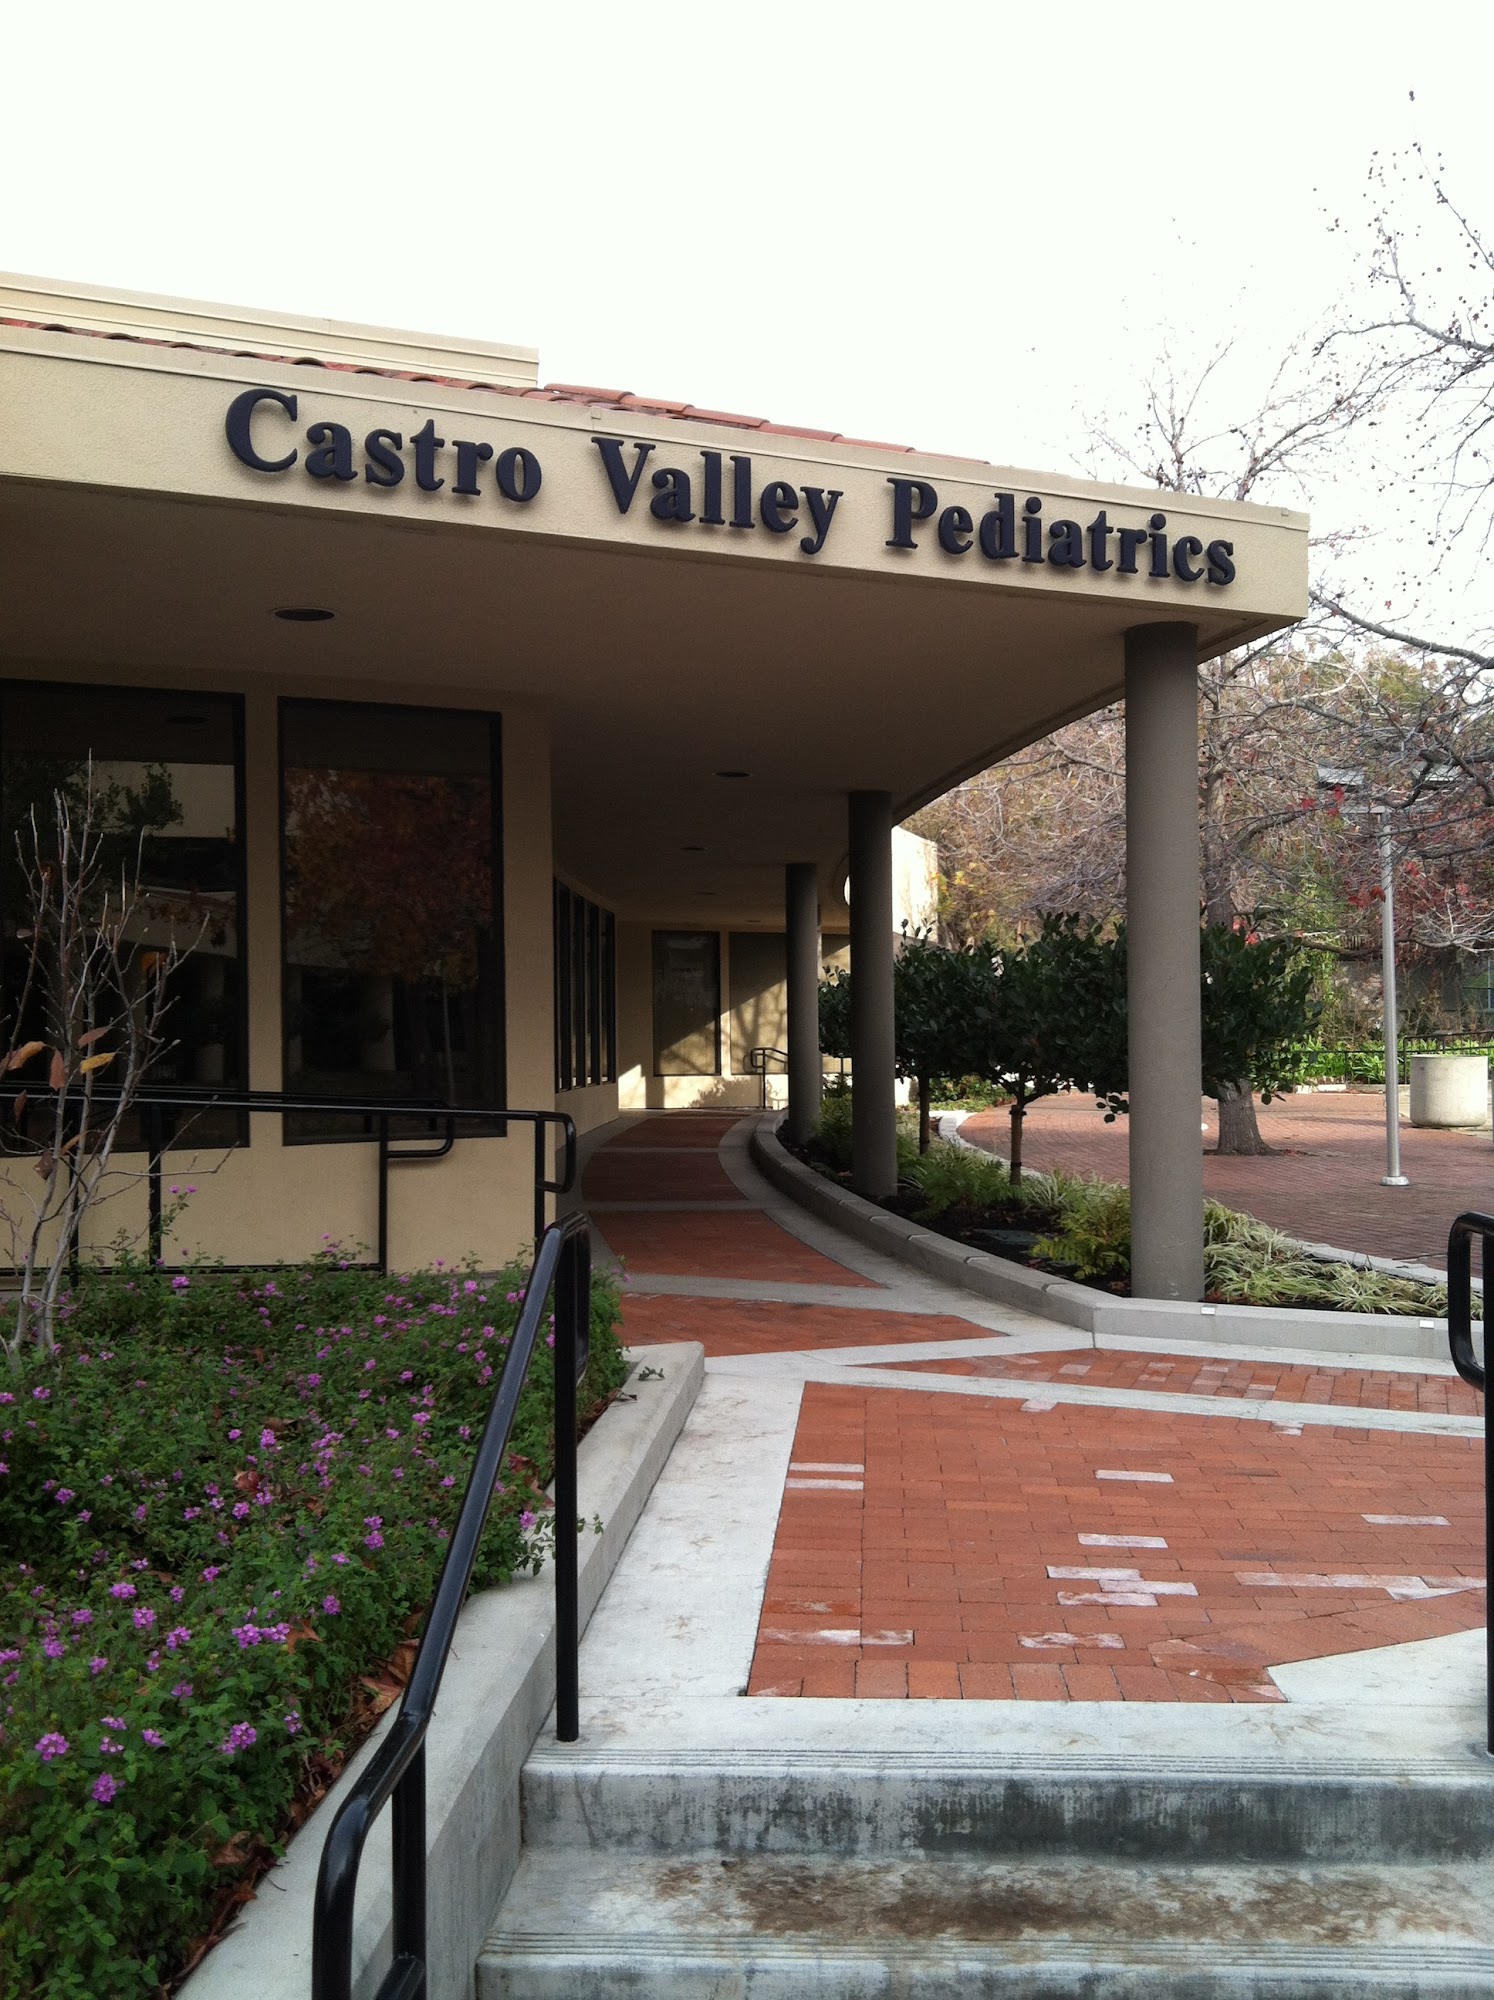 Castro Valley Pediatrics